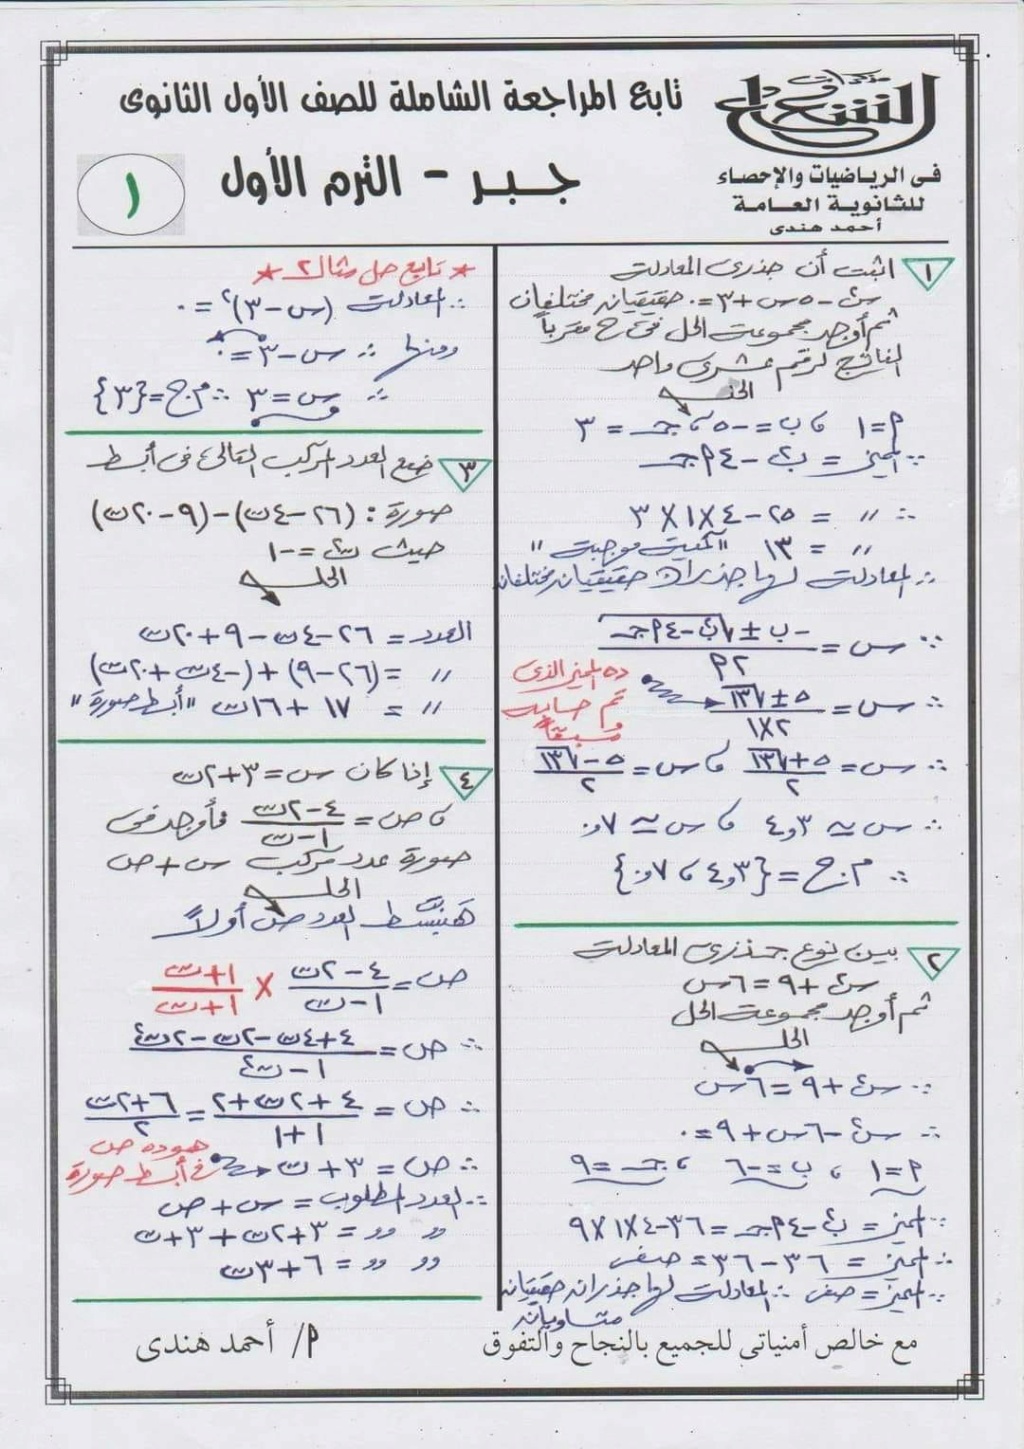 الرياضيات - بوكليت مراجعة الرياضيات أولى ثانوي PDF أ. محمود حرة أ. أحمد هندي 1863